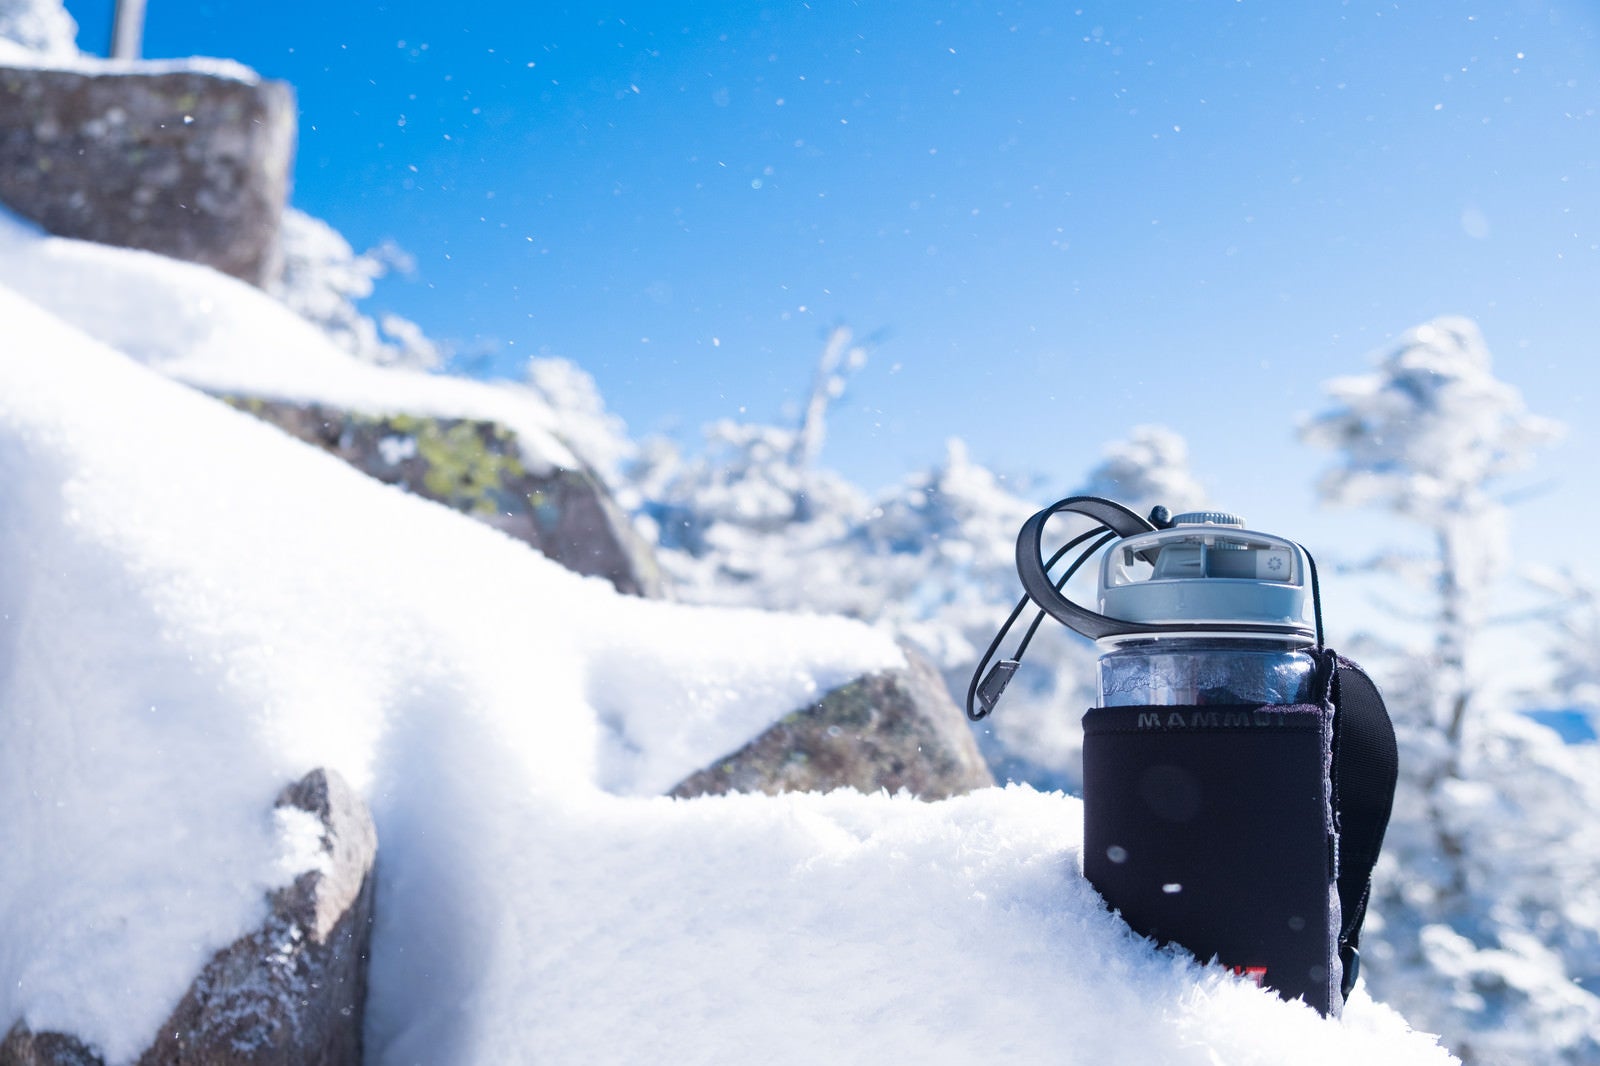 「氷点下15℃の気温で氷始めたドリンクボトル」の写真